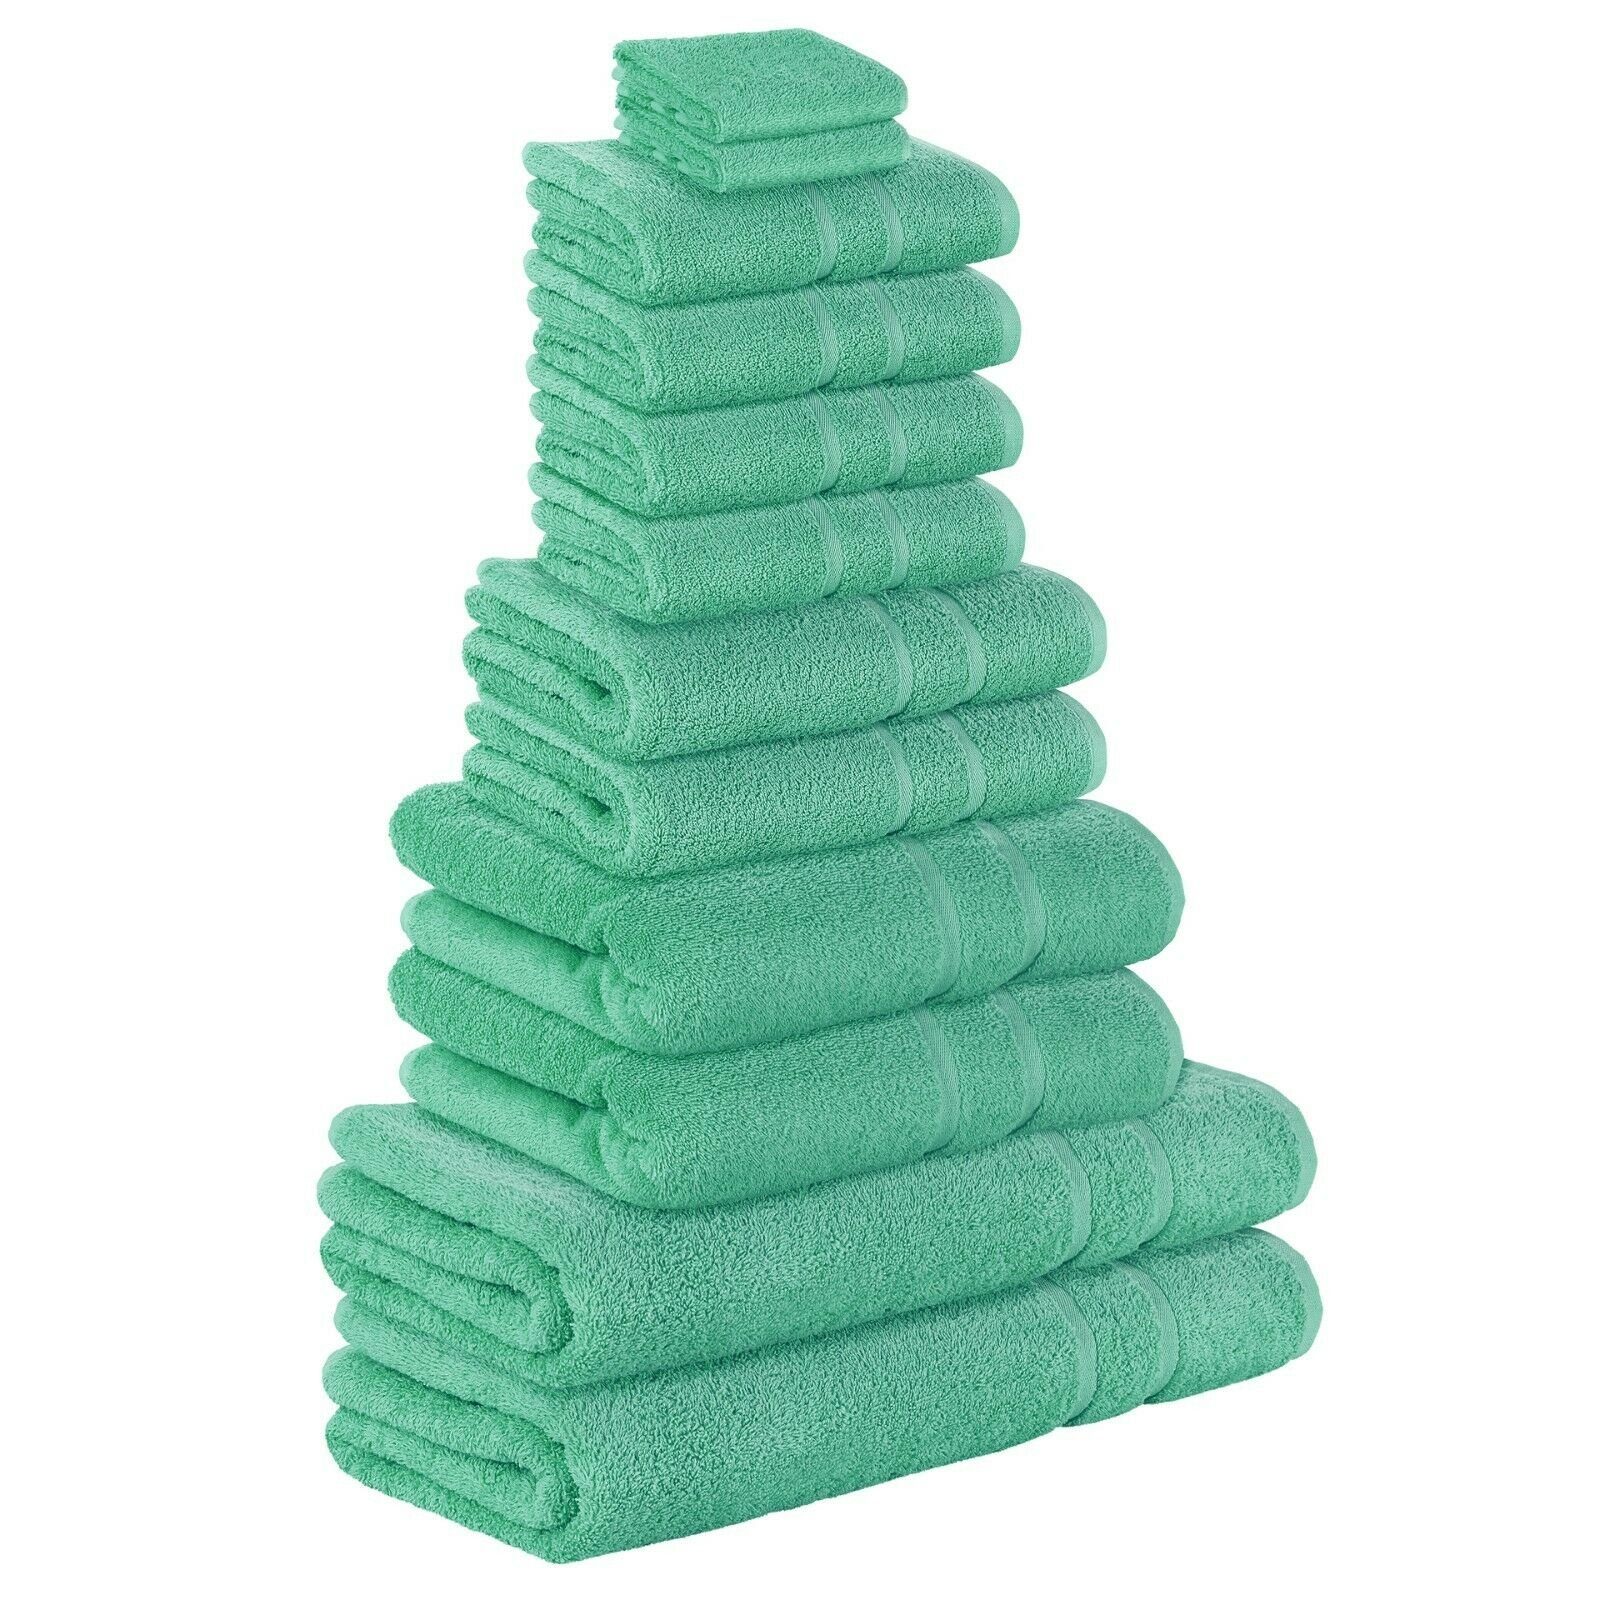 StickandShine Handtuch Set 4x Gästehandtuch 2x Handtücher 4x Duschtücher 2x Badetuch als SET in verschiedenen Farben (12 Teilig) 100% Baumwolle 500 GSM Frottee 12er Handtuch Pack, (Spar-SET) Smaragdgrün